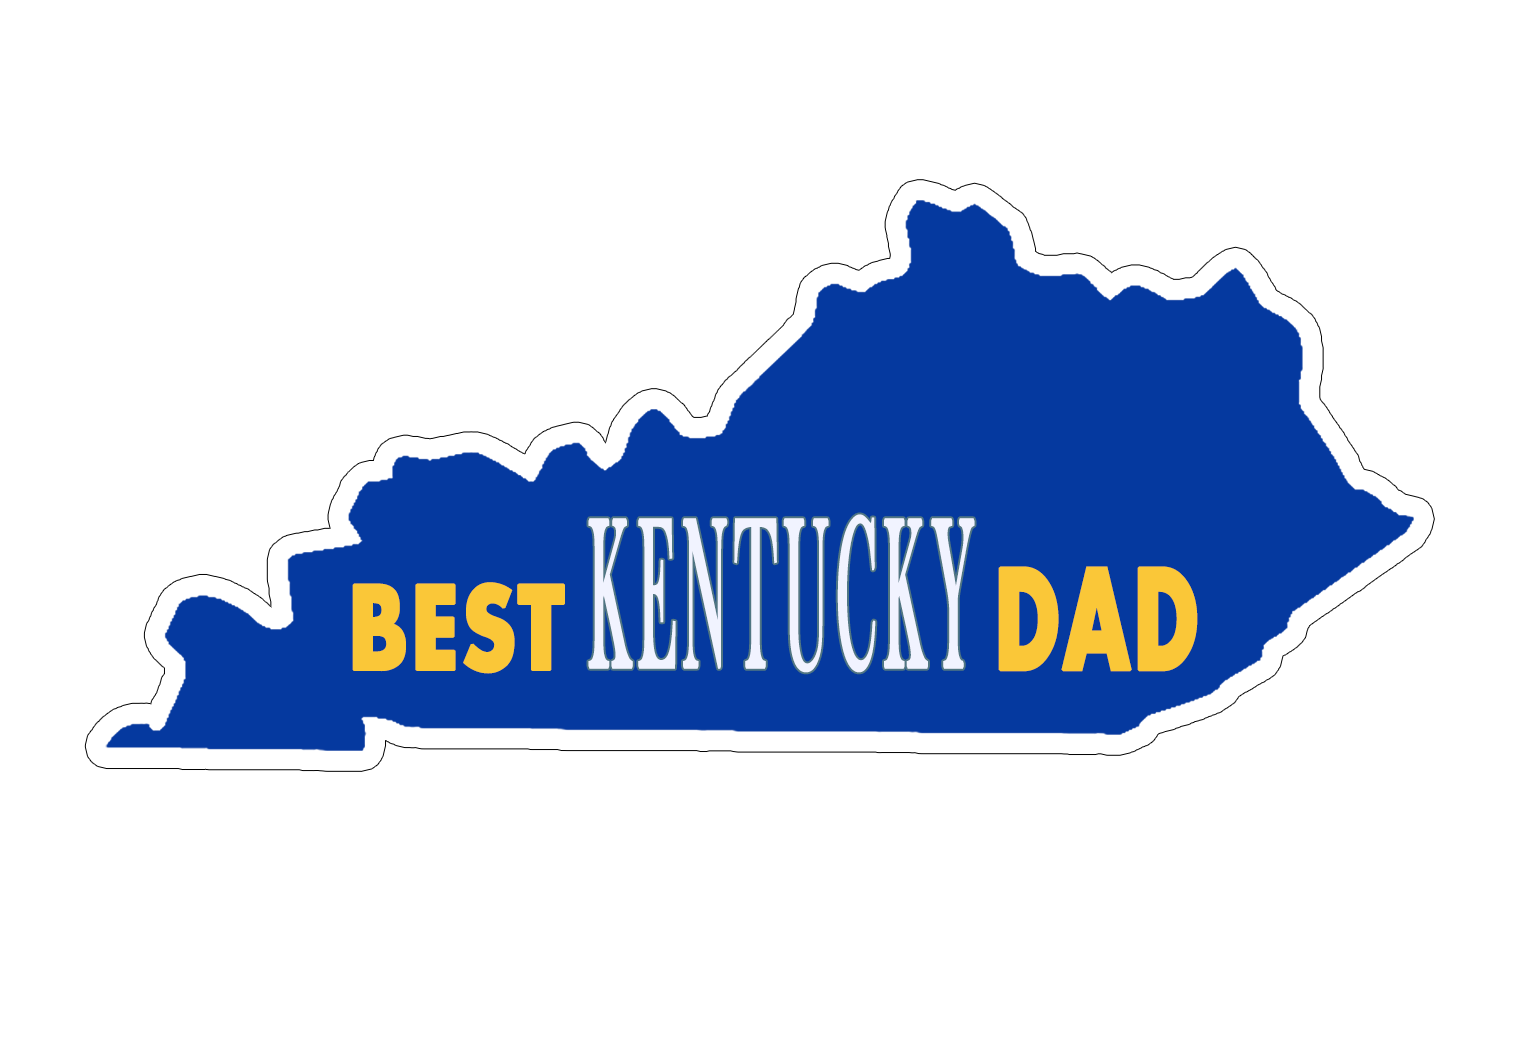 Best Kentucky Dad Blue Sticker